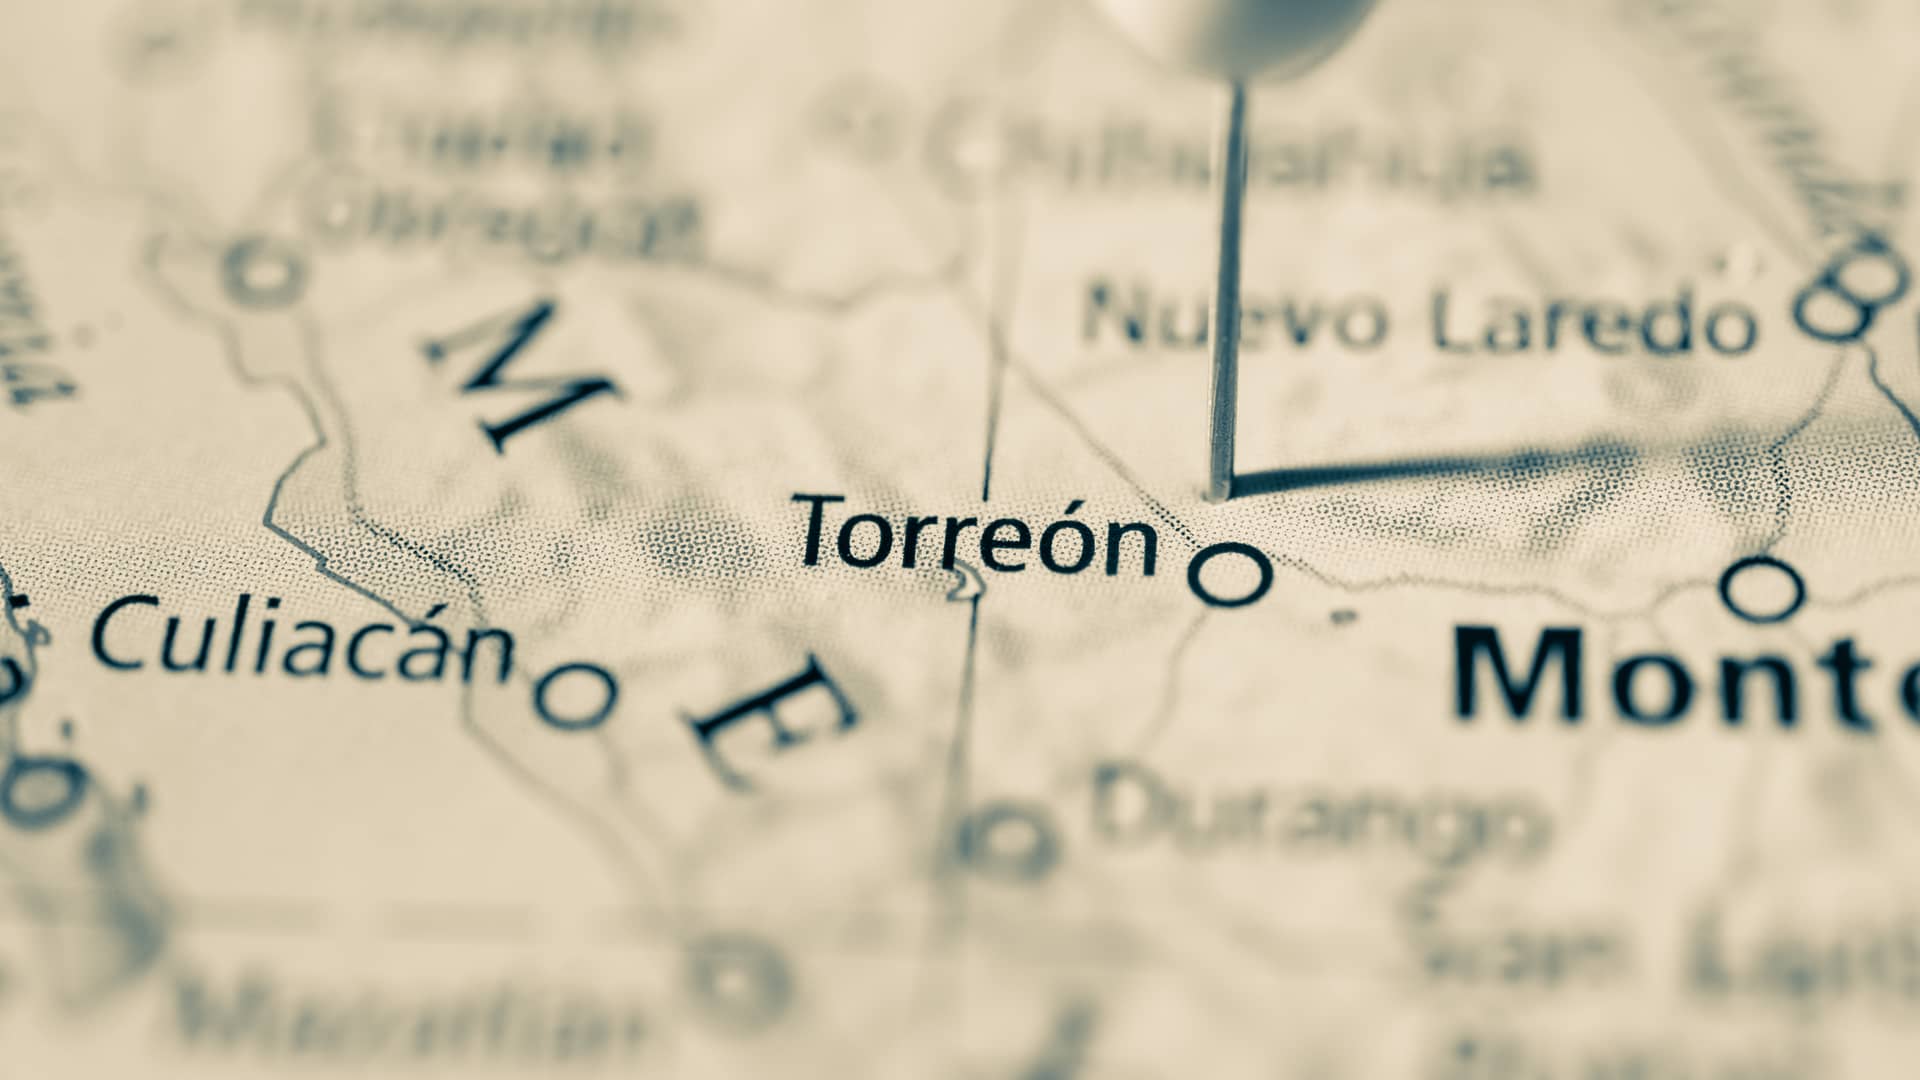 ciudad de torreon en el mapa de mexico para hacer referencia a las localidades con internet